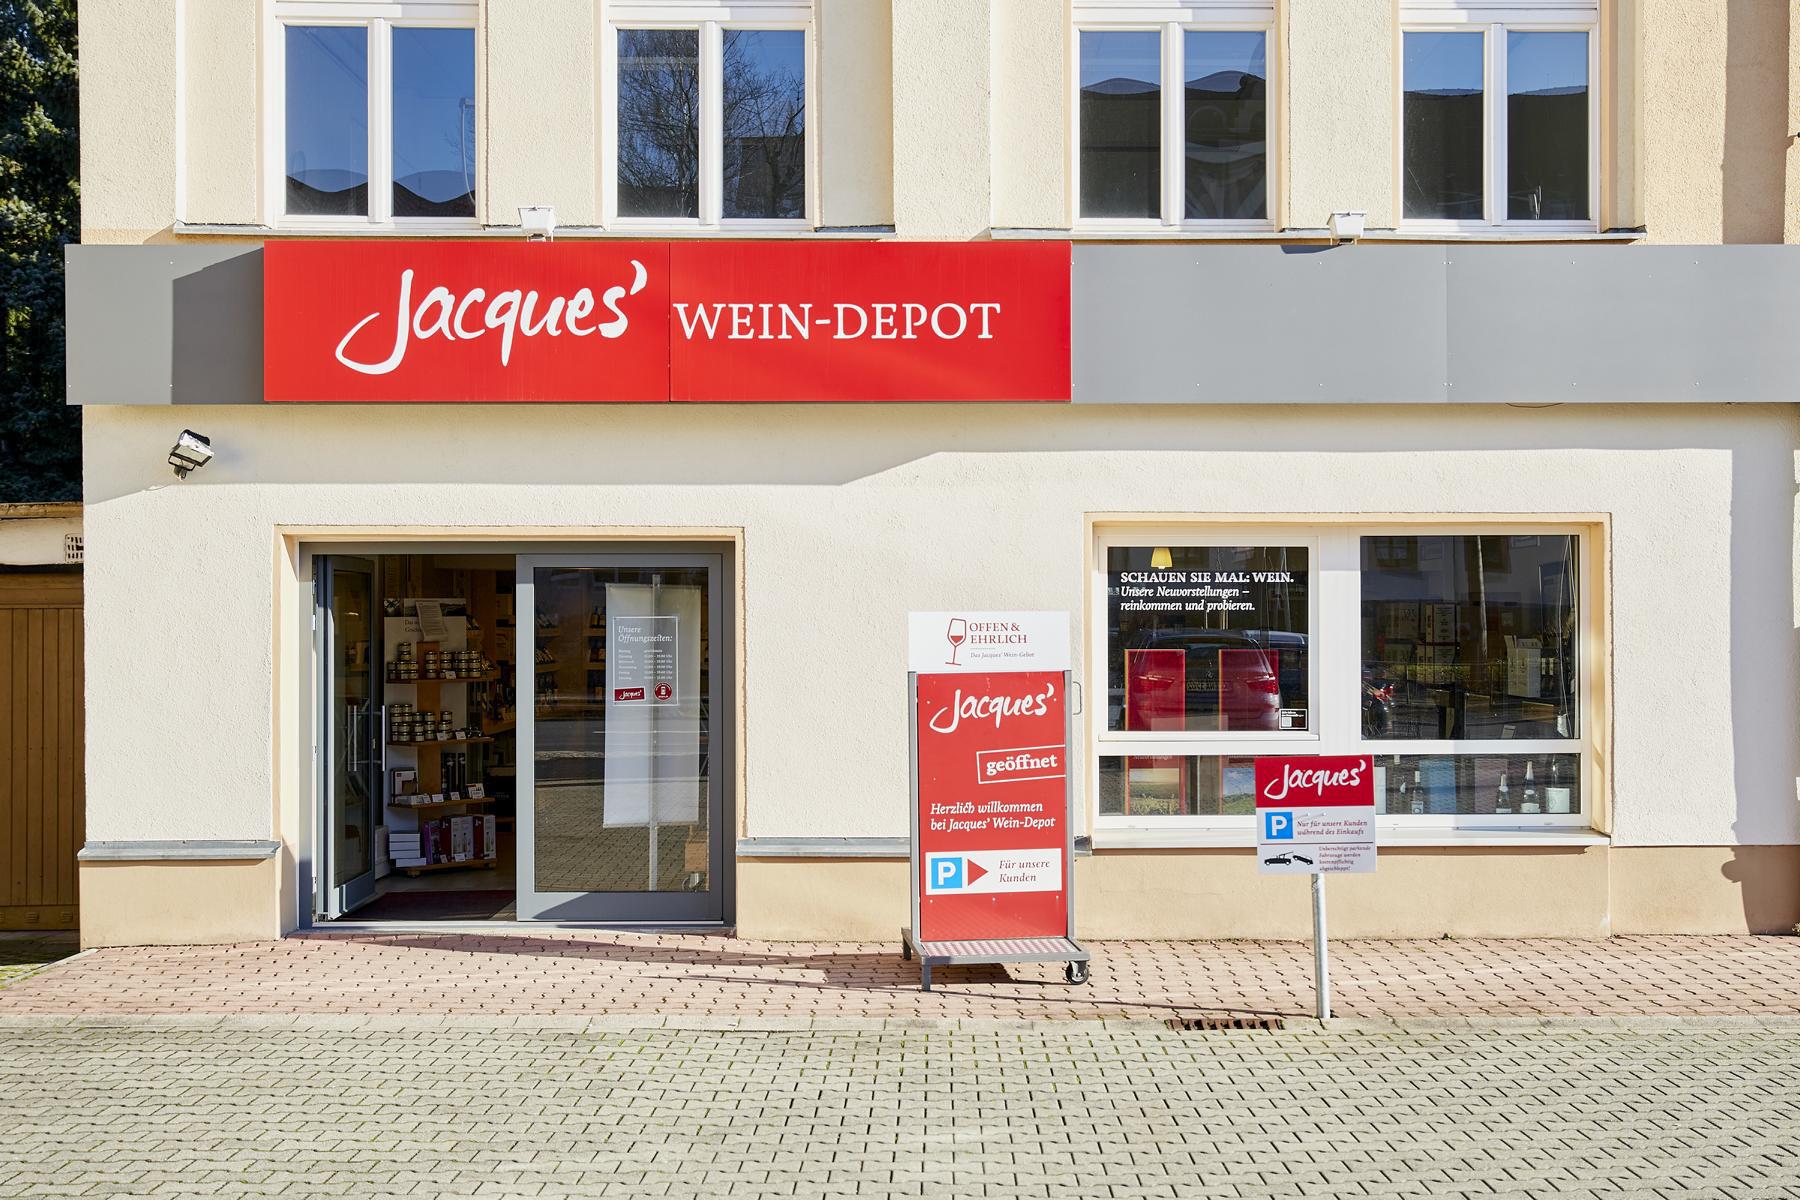 Bild 2 Jacques’ Wein-Depot Zwickau in Zwickau